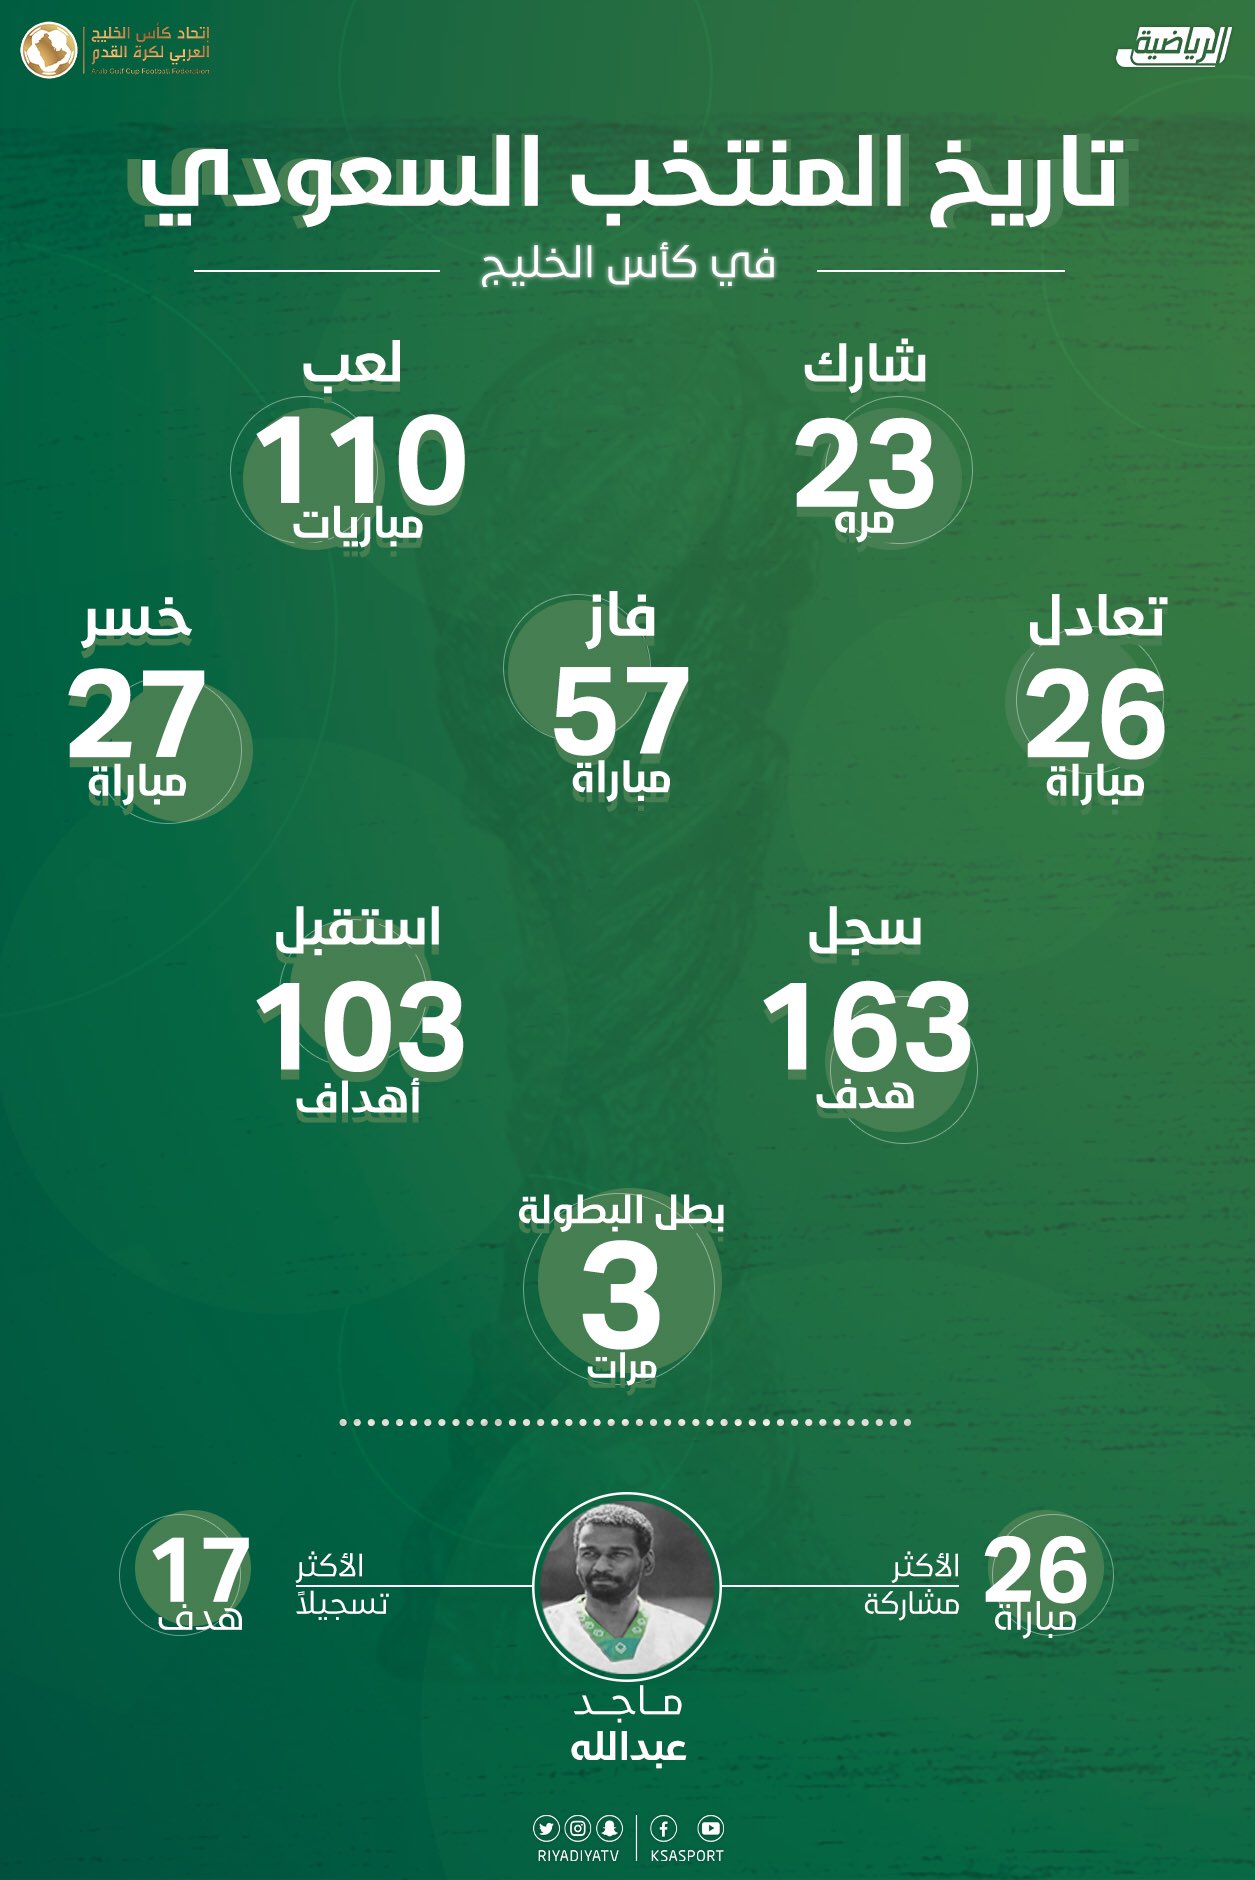 تاريخ مشاركات منتخب السعودية في بطولة كأس الخليج